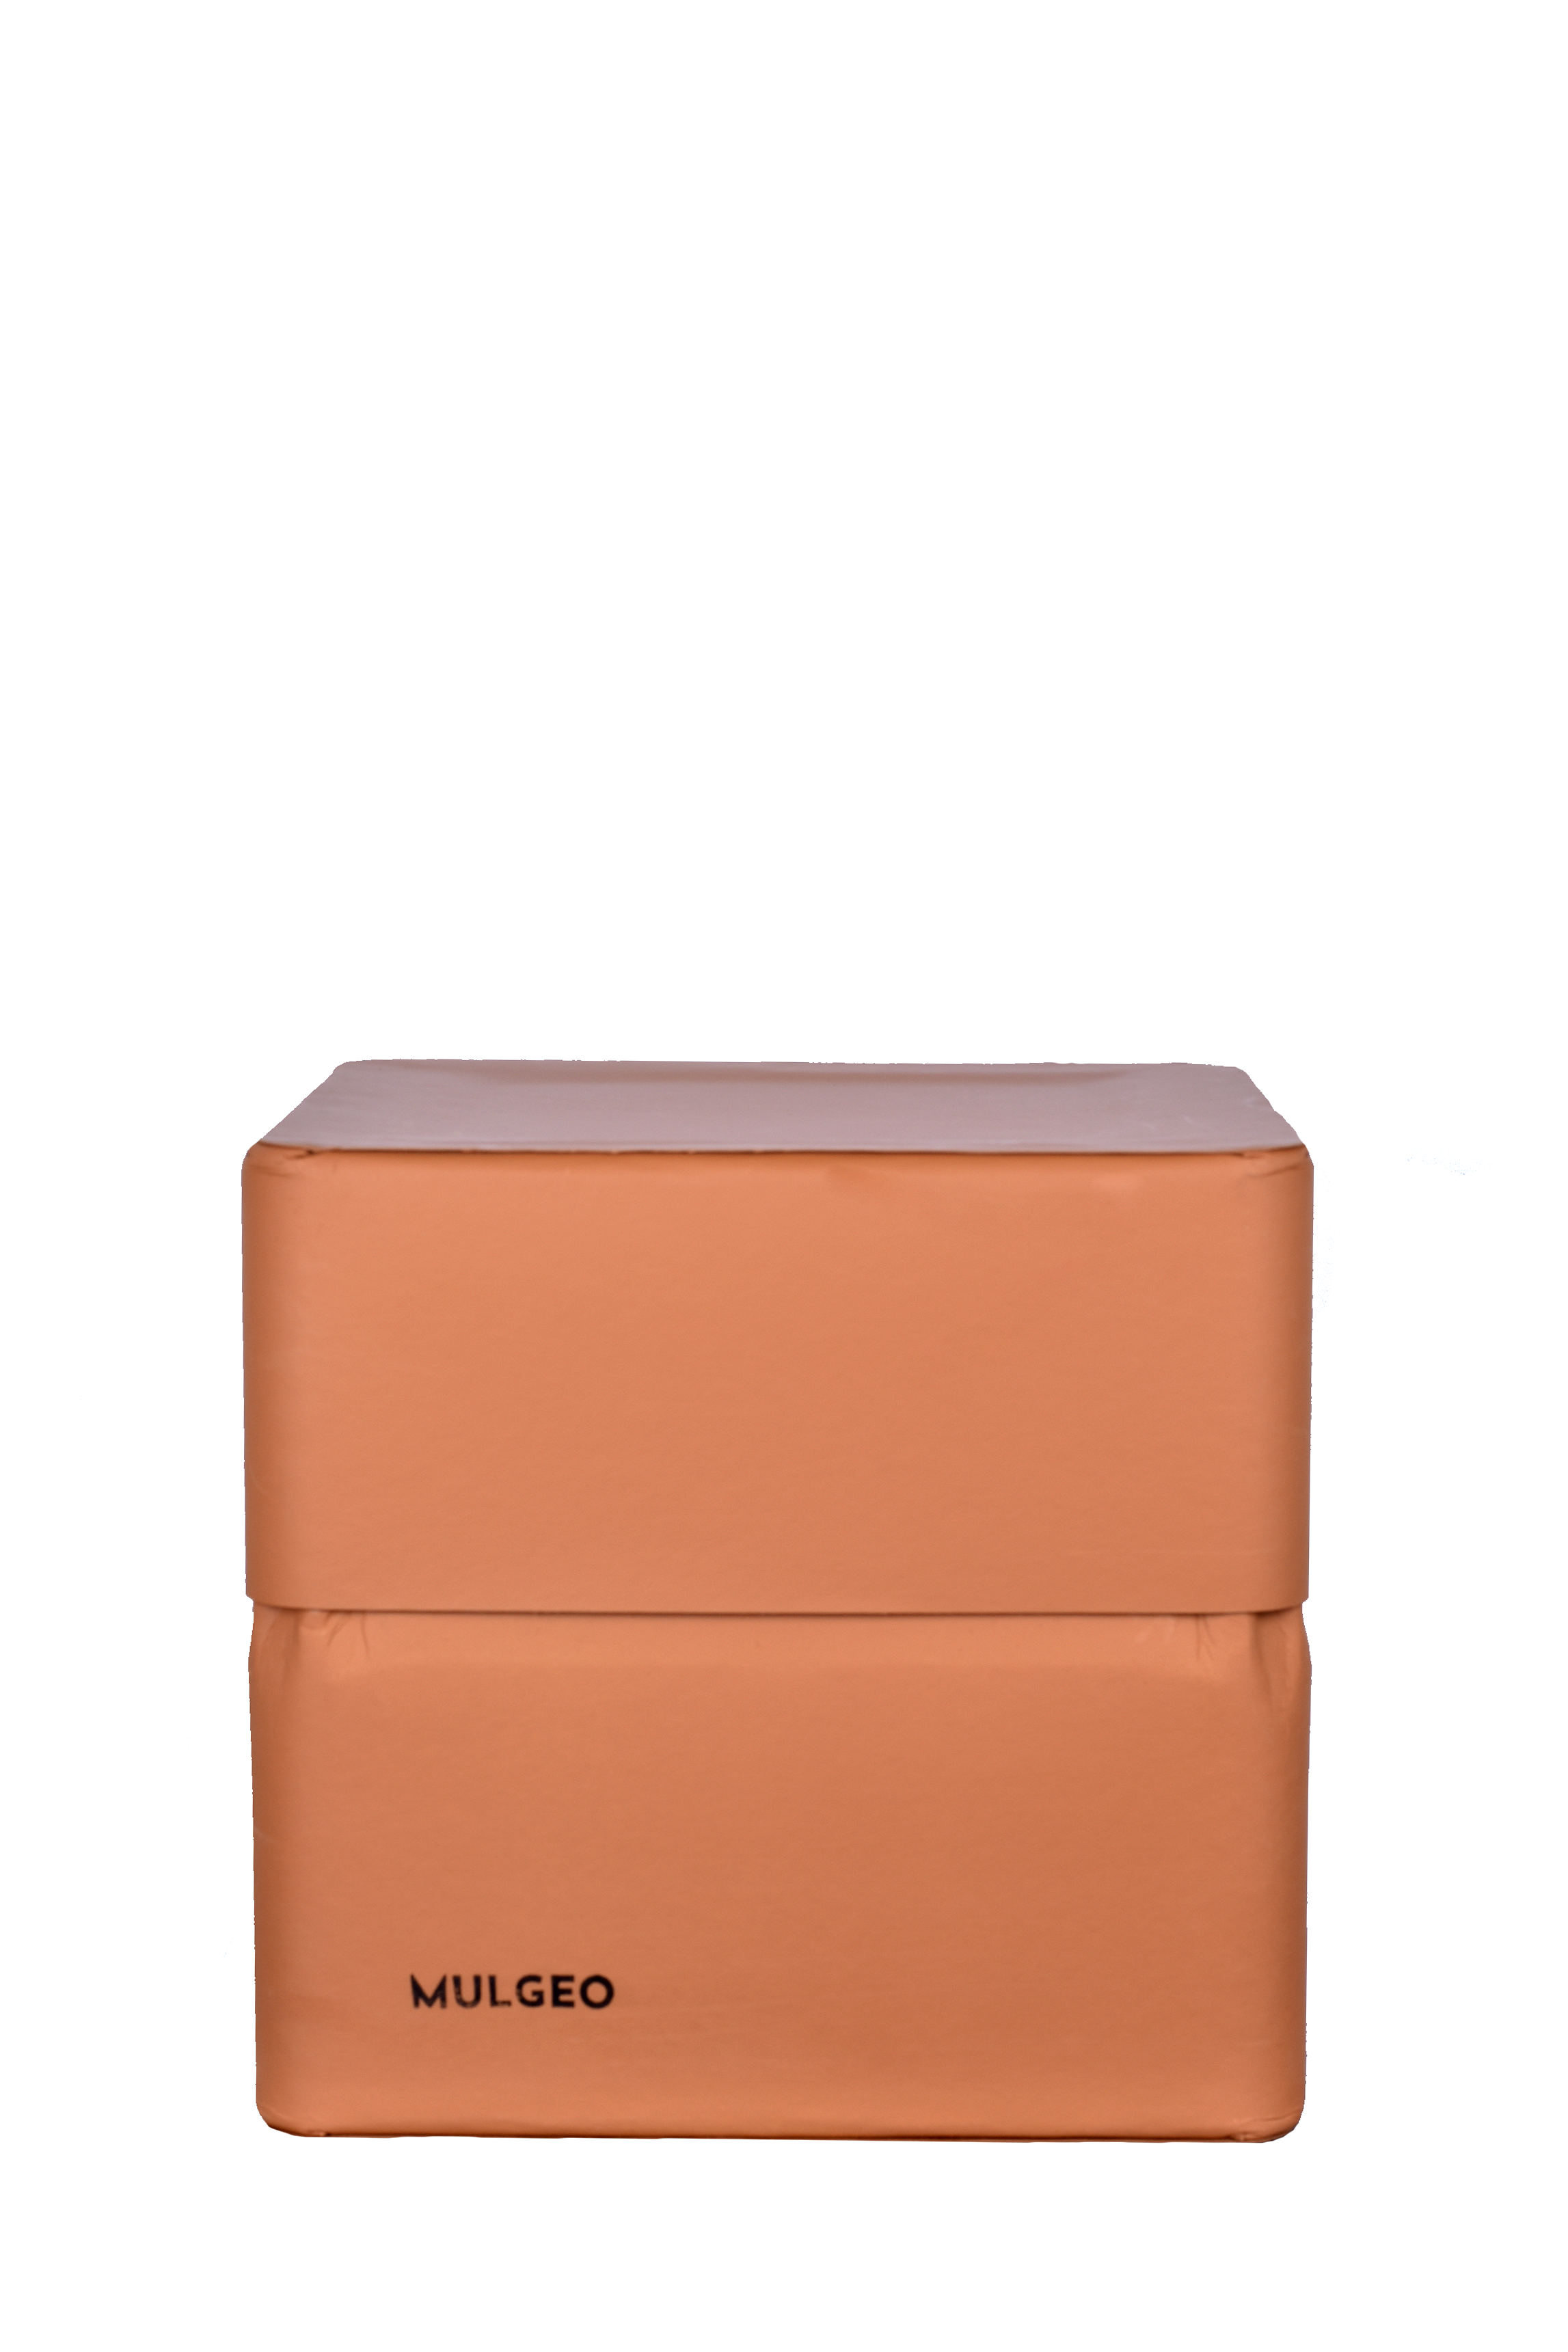 MULGEO Box-Chair H34 clay-1